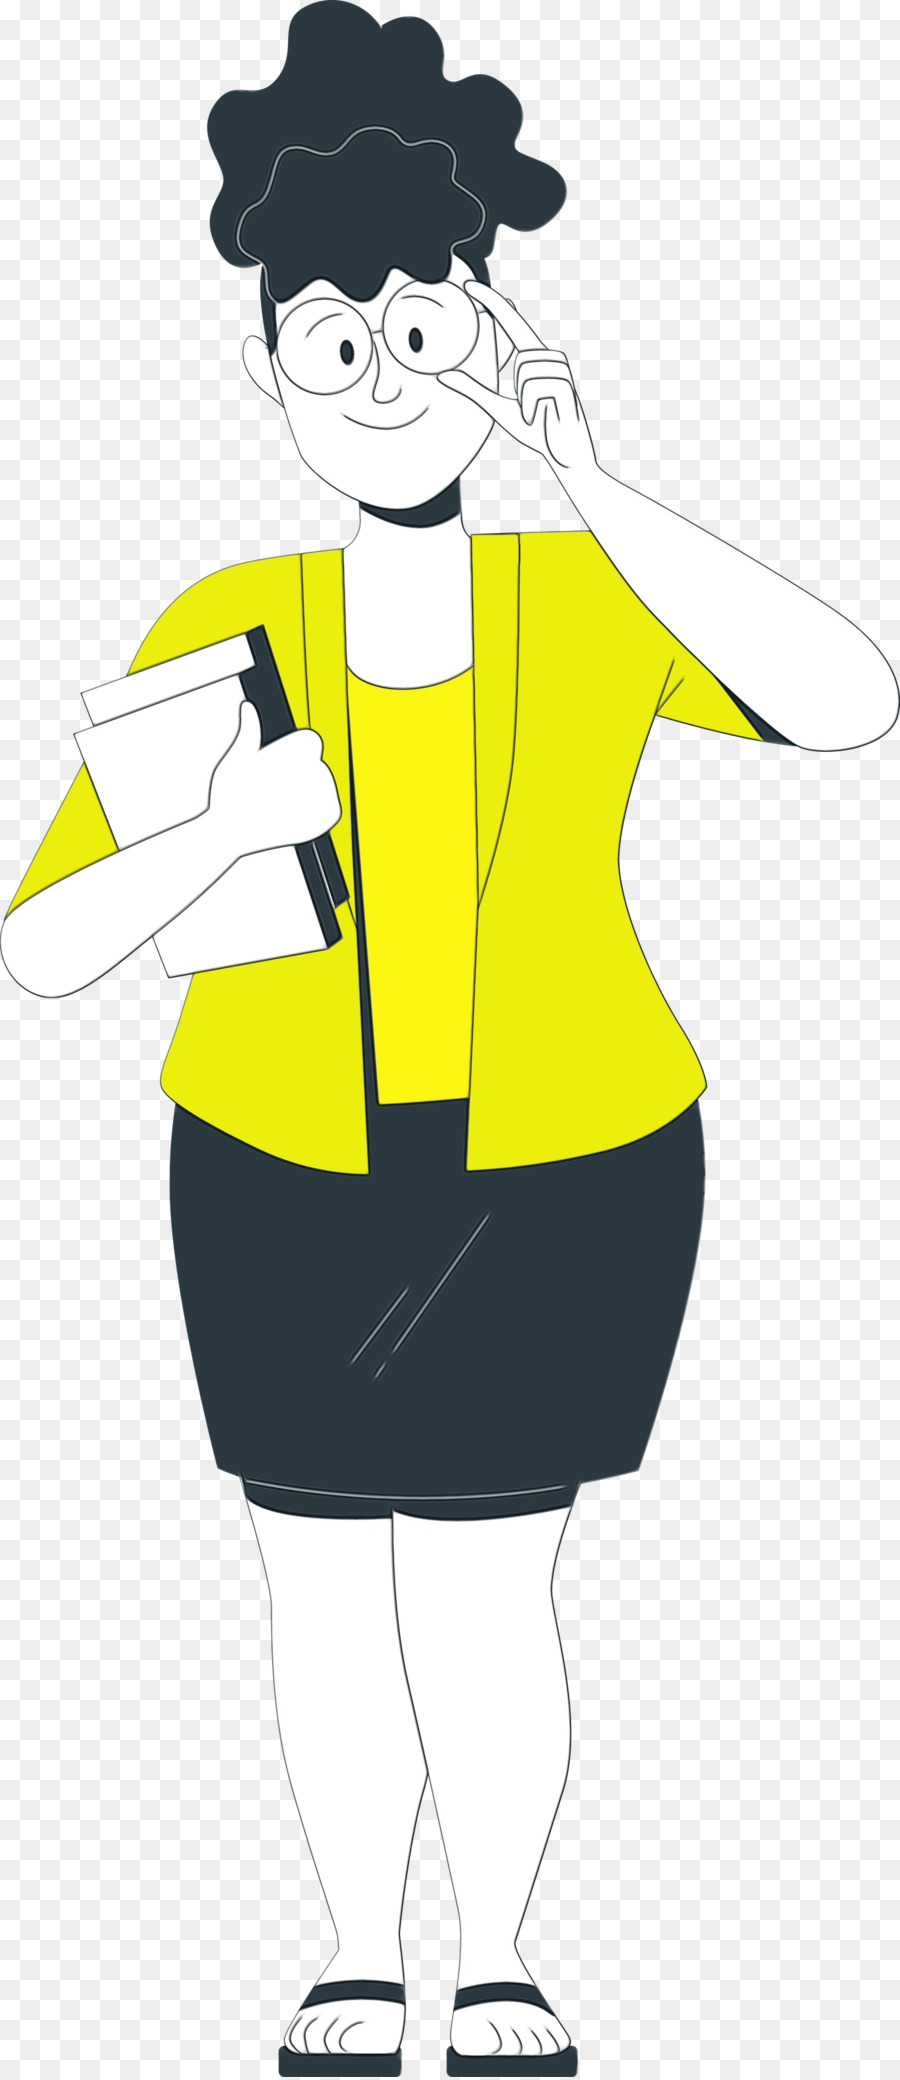 donna m copricapo giallo personaggio uniforme - 